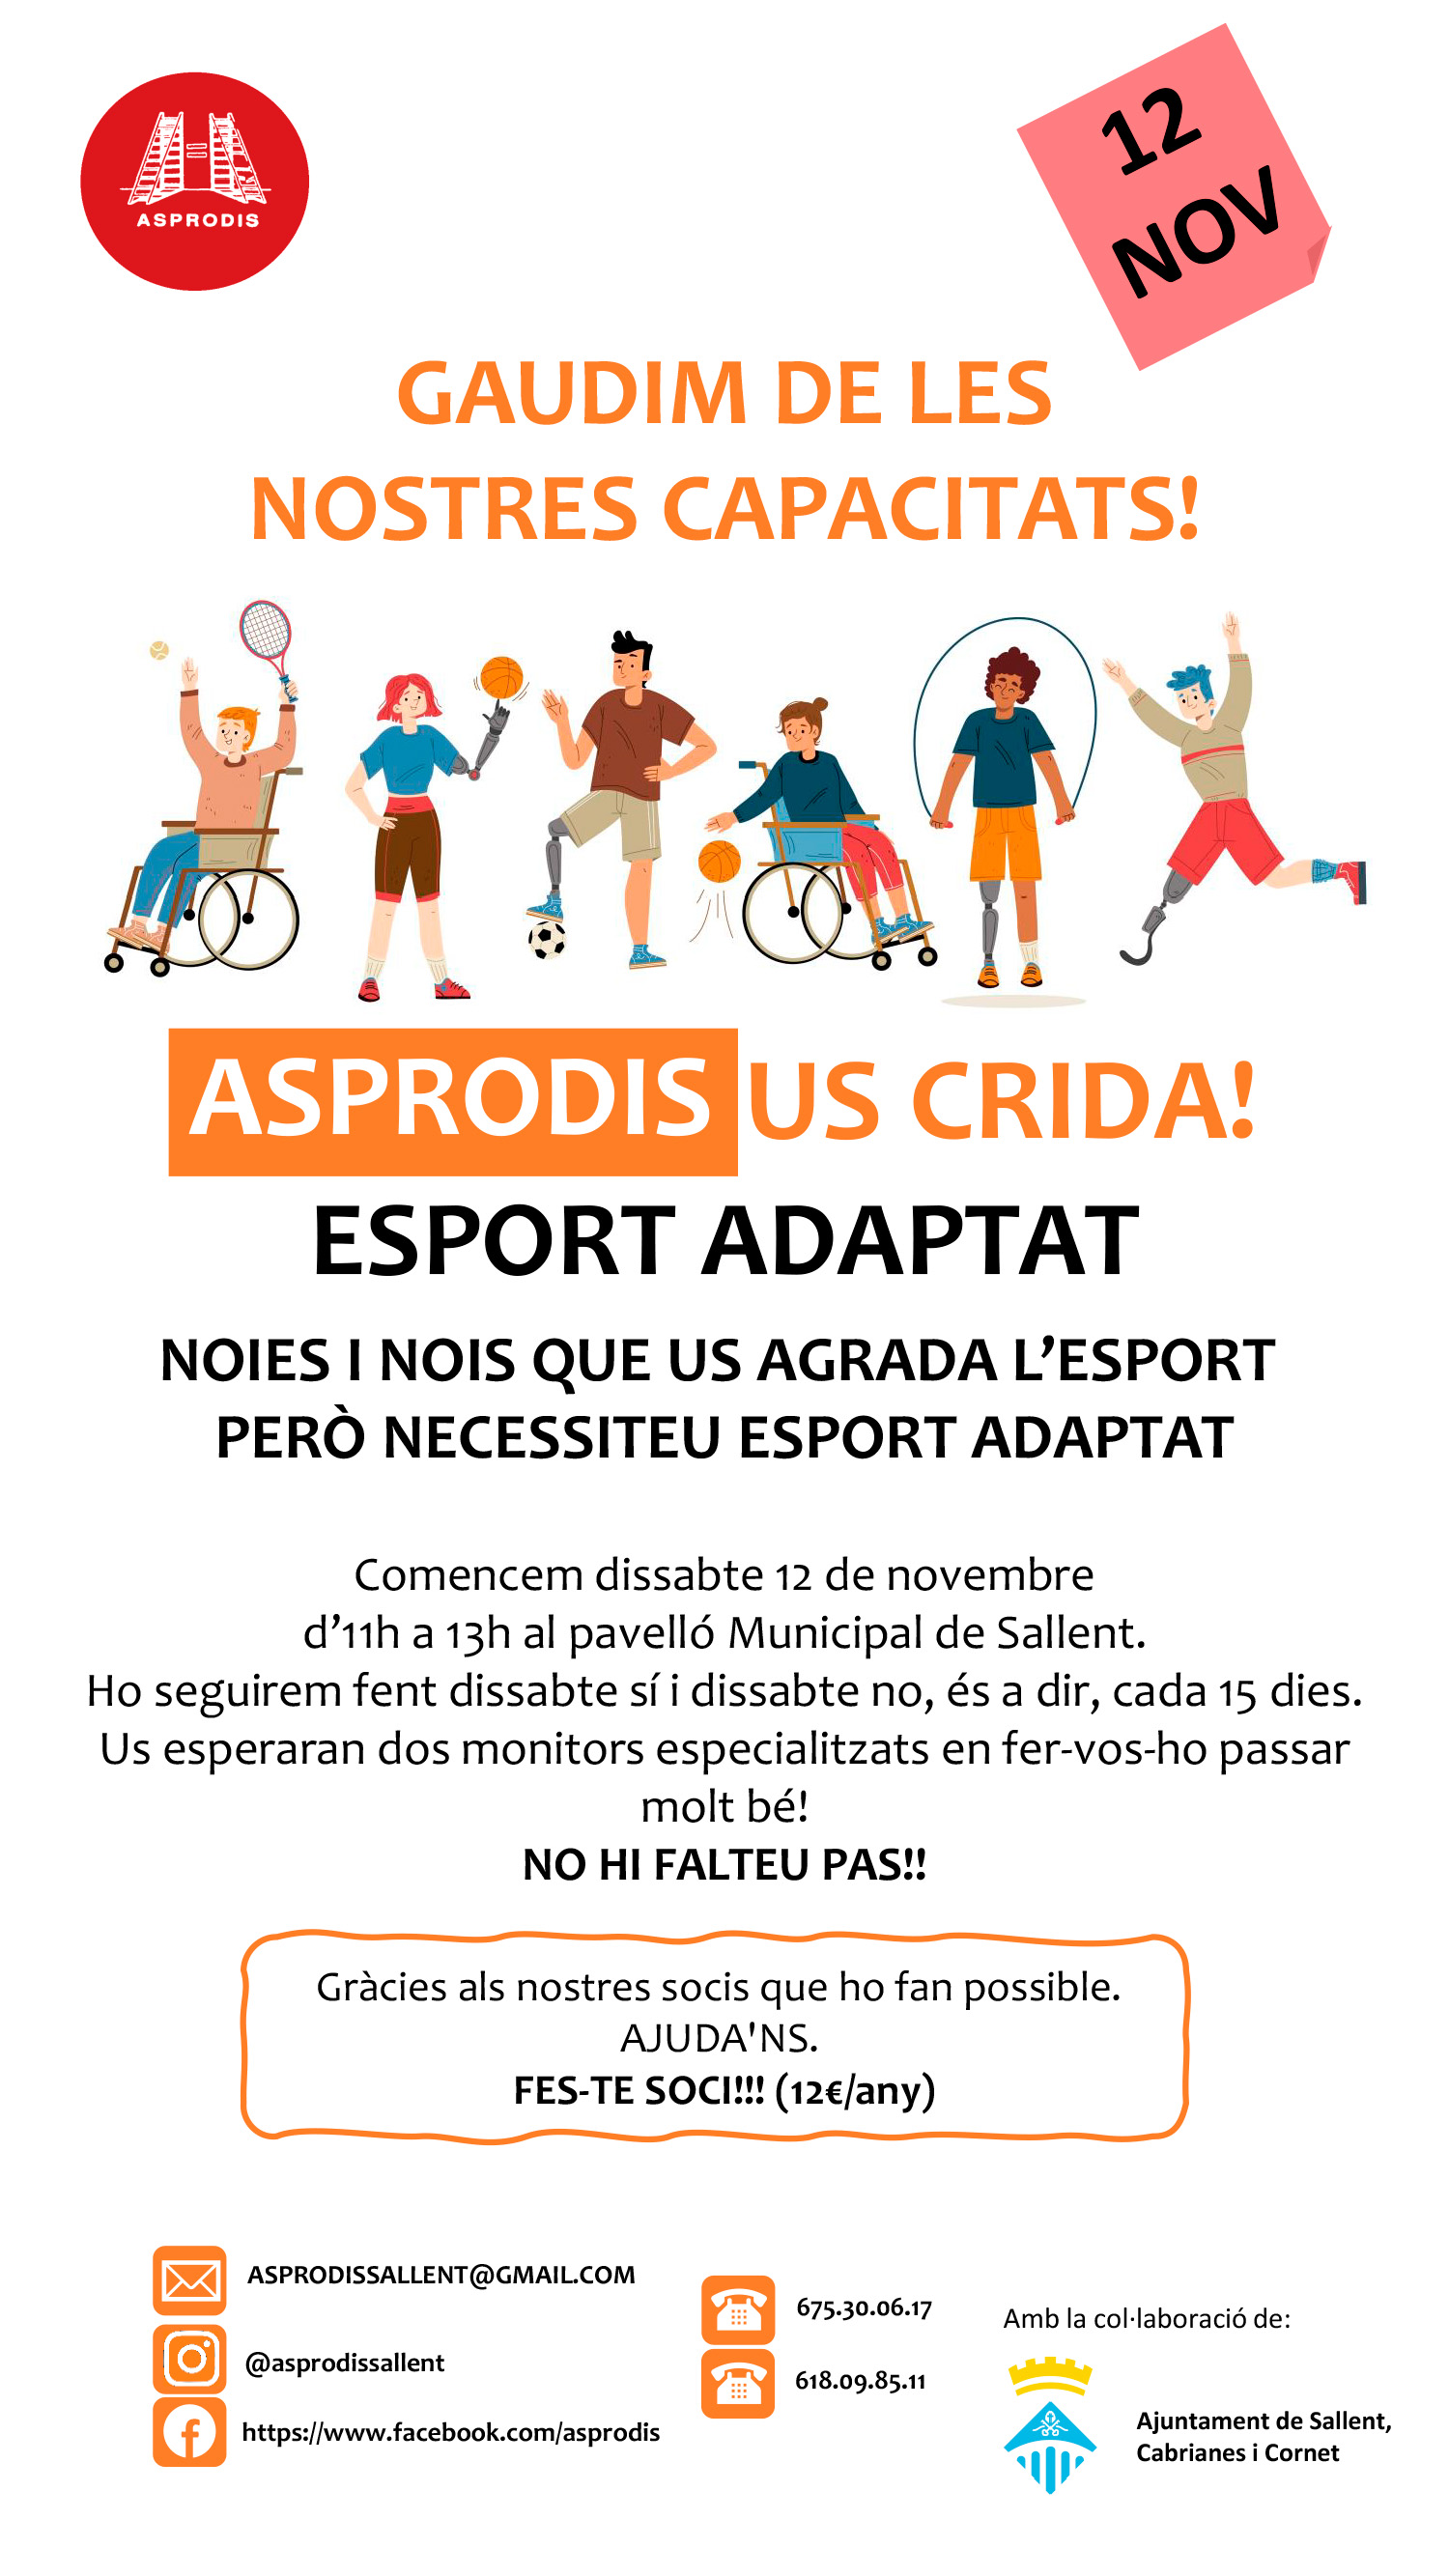 Esport adaptat a càrrec d'Asprodis